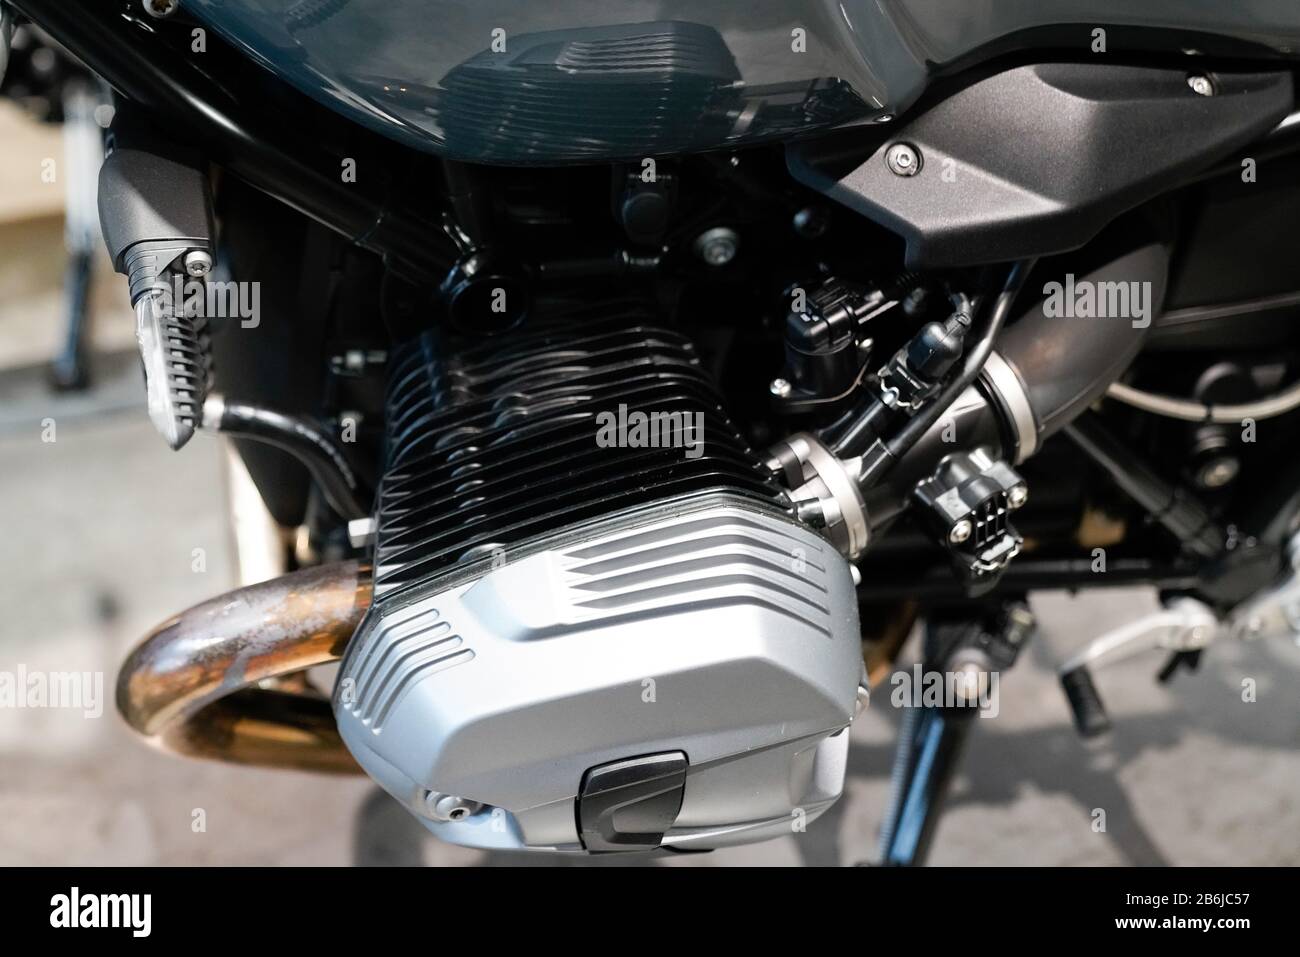 Bordeaux , Aquitaine / France - 02 15 2020 : BMW détail moteur boxer plat  dans la boutique moto nouveau moteur moderne Photo Stock - Alamy